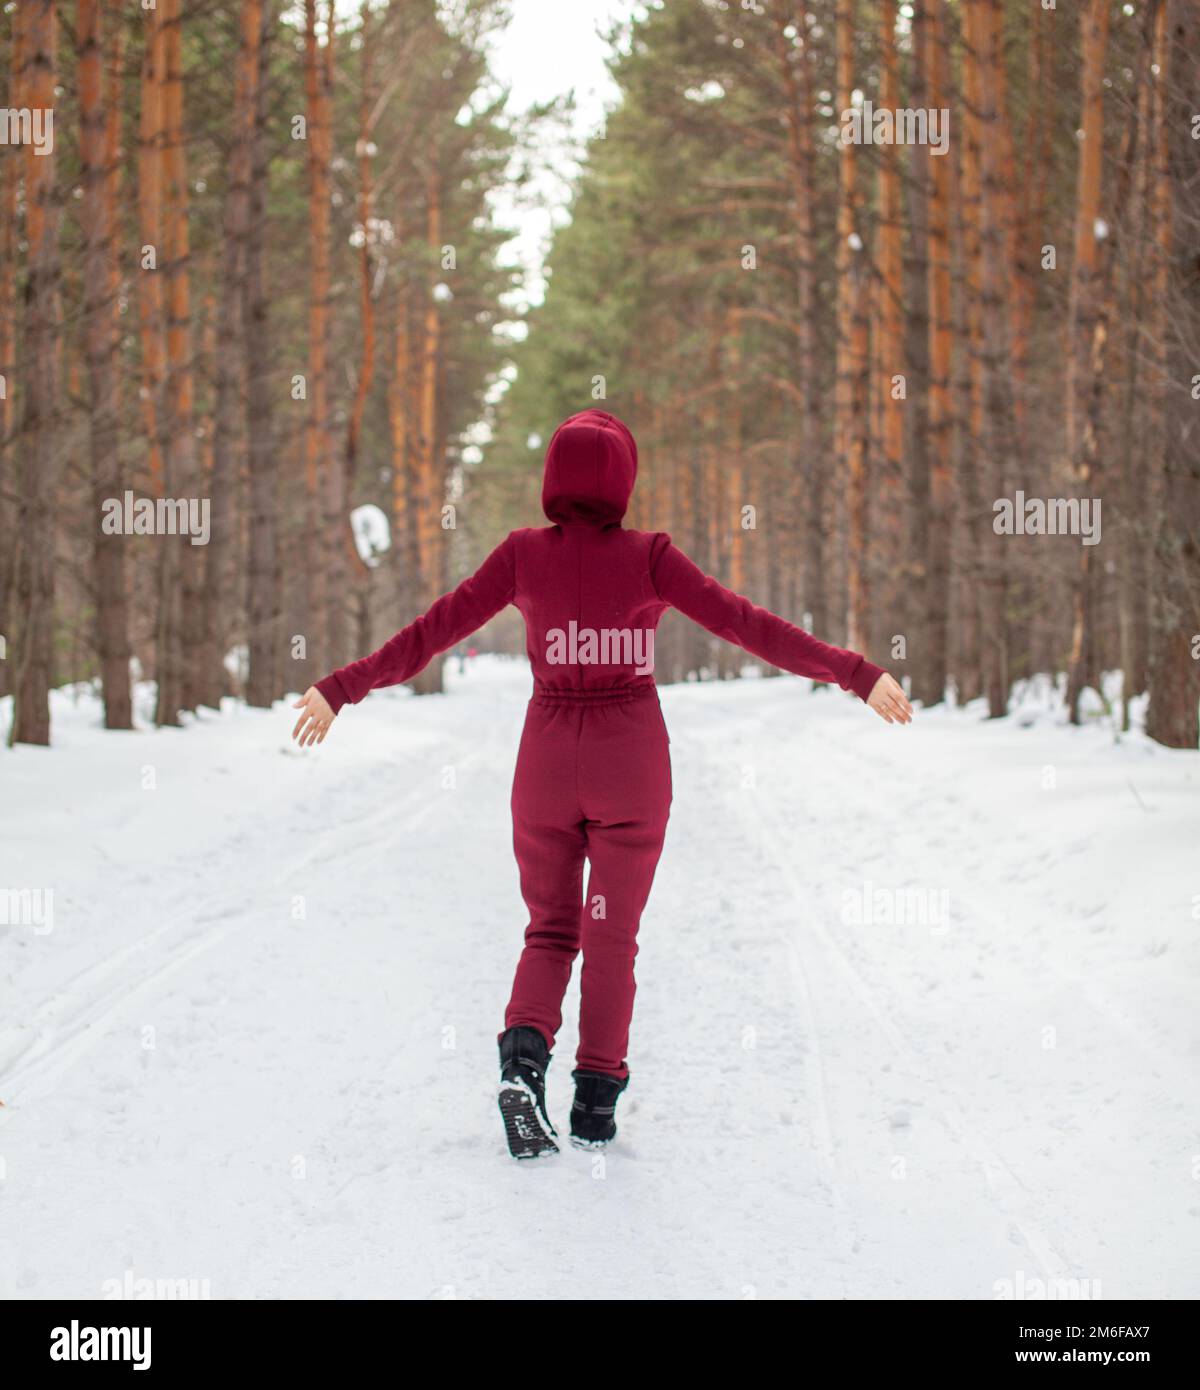 Promenade d'hiver dans une forêt enneigée, Une fille avec une combinaison rouge Banque D'Images